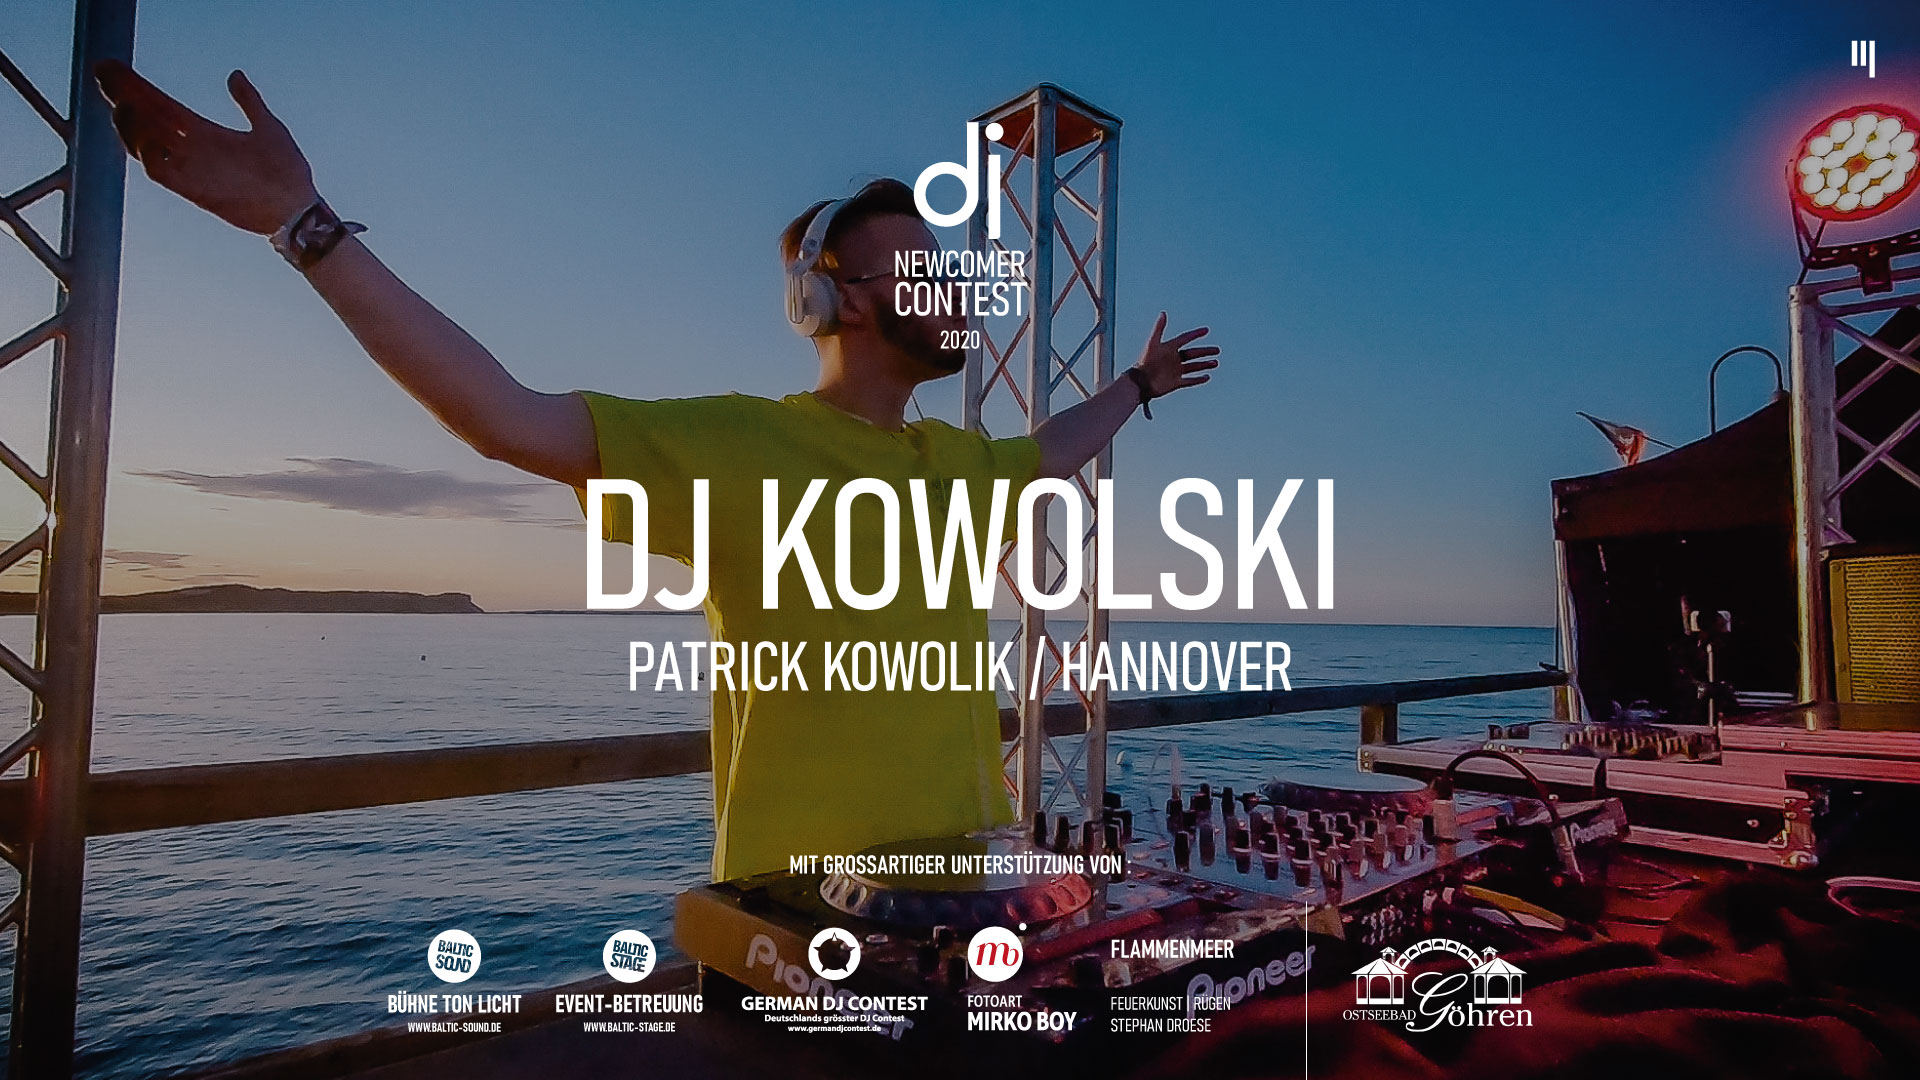 DJ KOWOLSKI